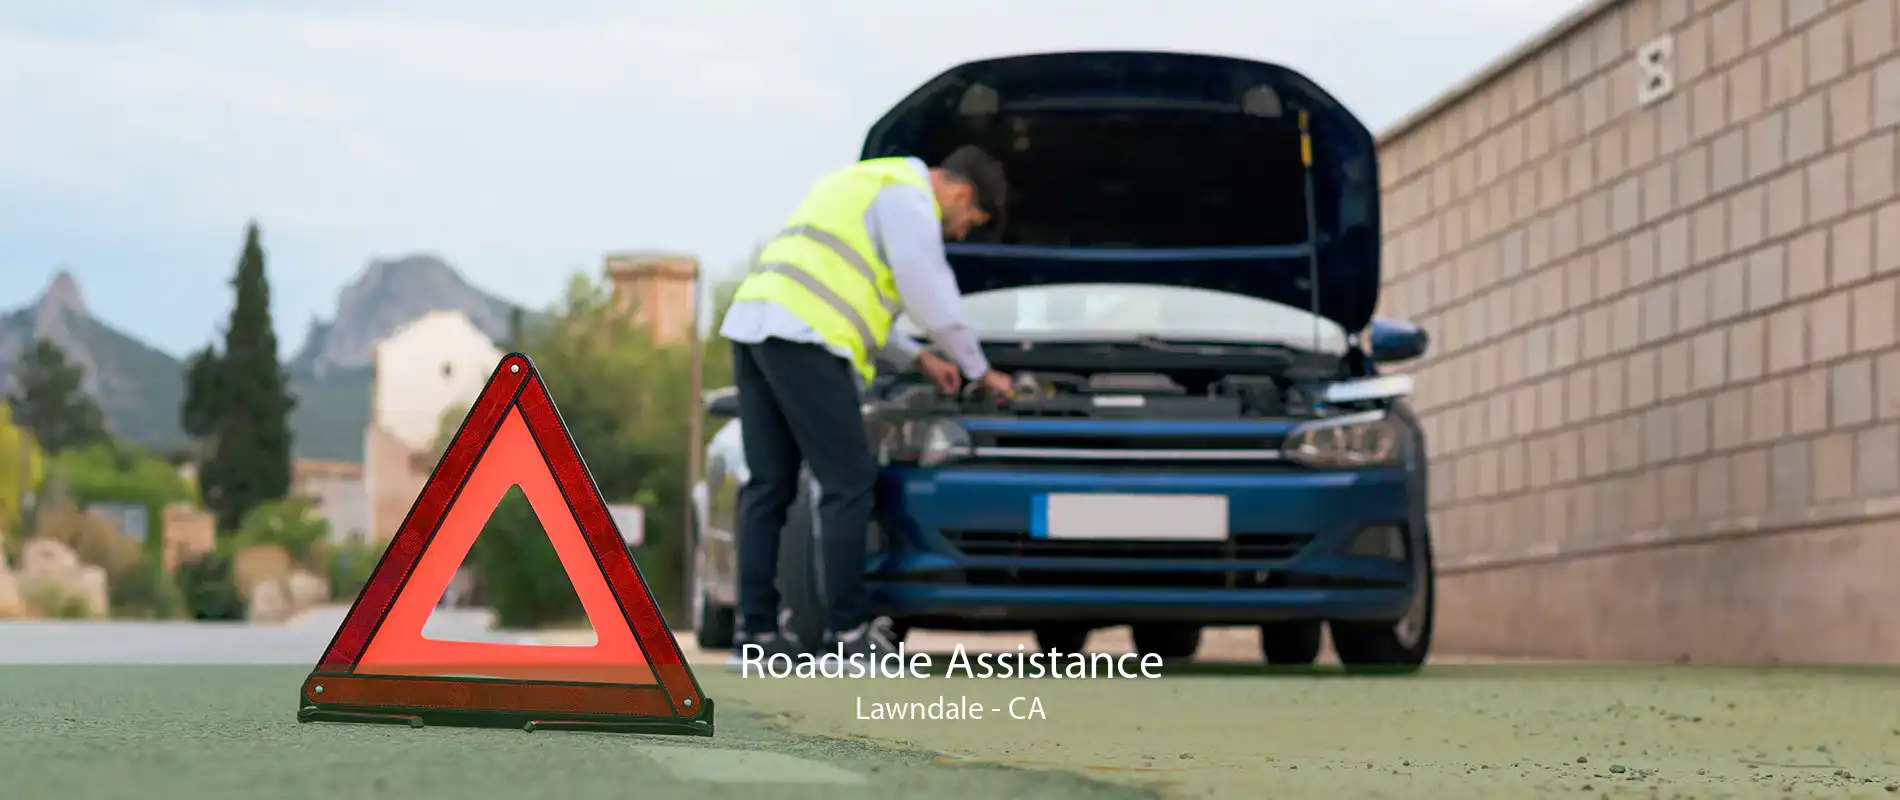 Roadside Assistance Lawndale - CA